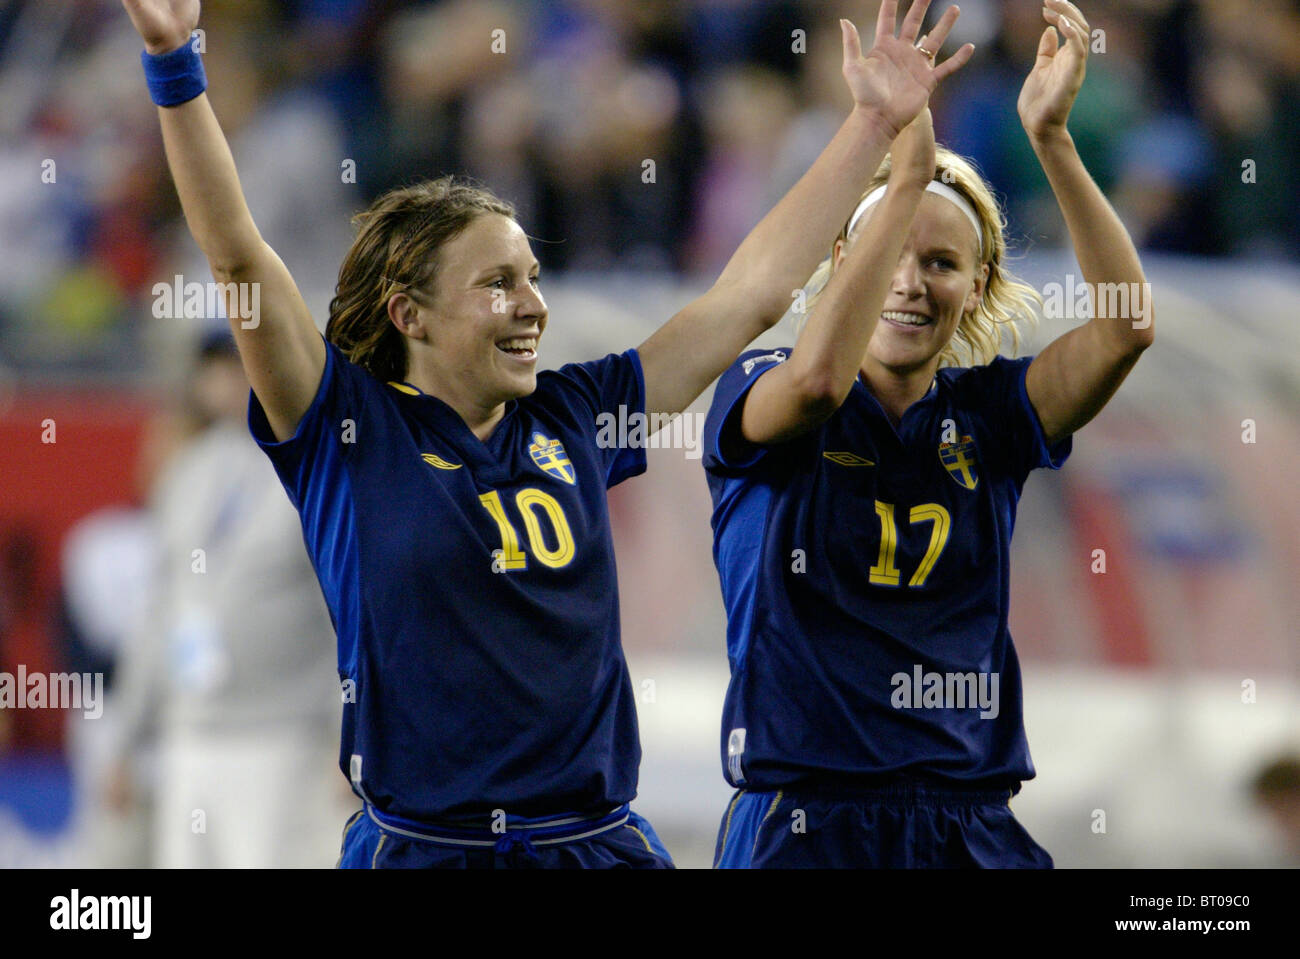 Les joueurs de la Suède (10) Hanna Ljungberg et Anna Sjoestrom (17) célébrer après leur victoire sur le Brésil en Coupe du Monde féminine 2003. Banque D'Images